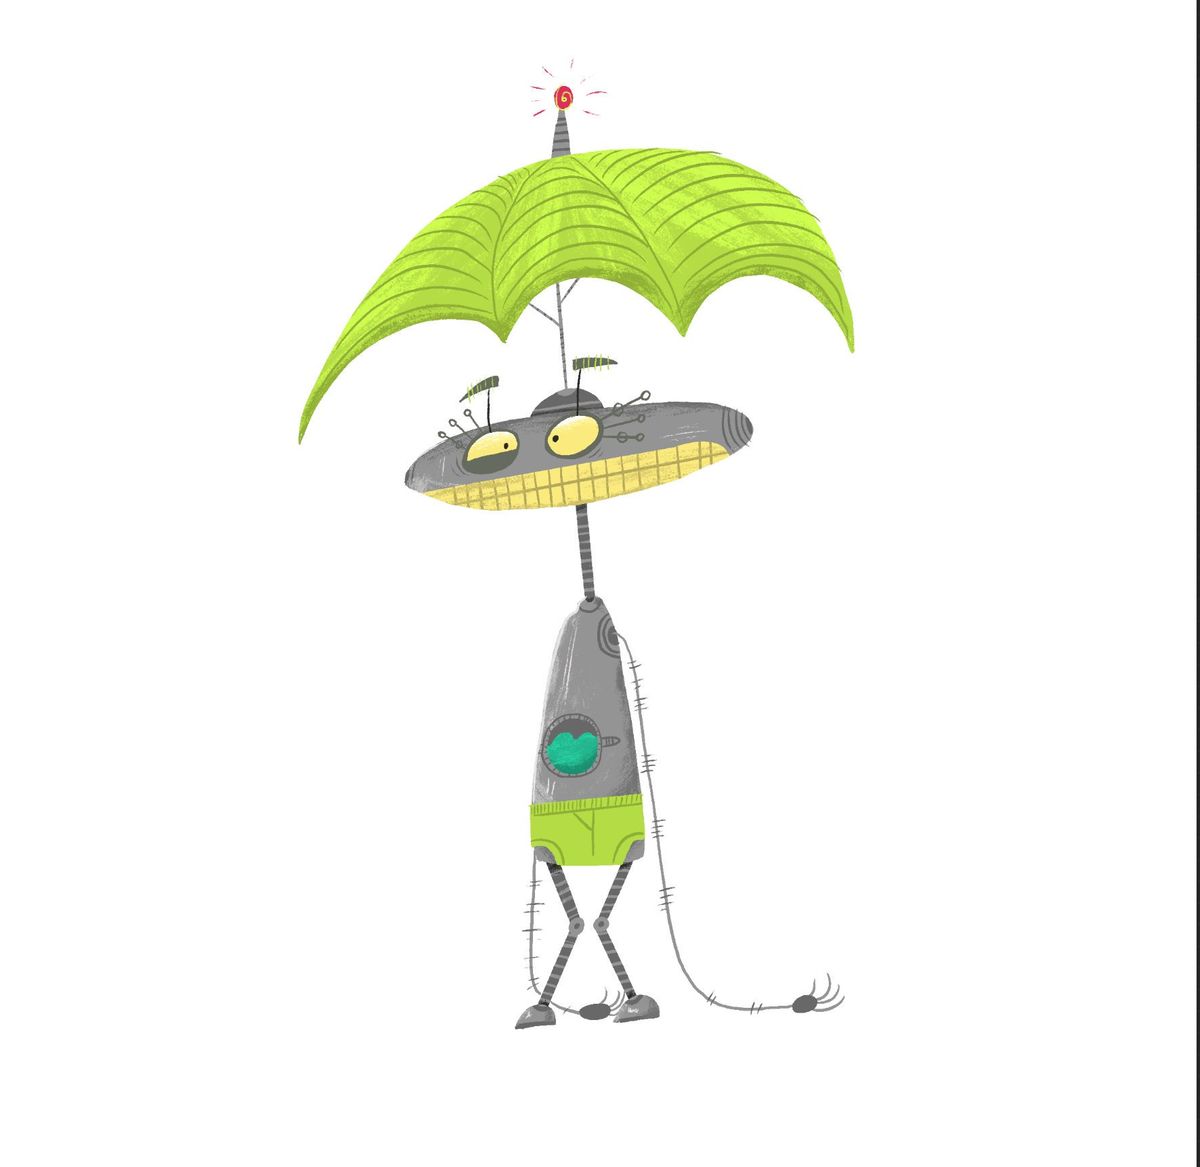 Ein Regenschirmhut klingt an einem regnerischen Tag wie ein Muss für einen Roboter